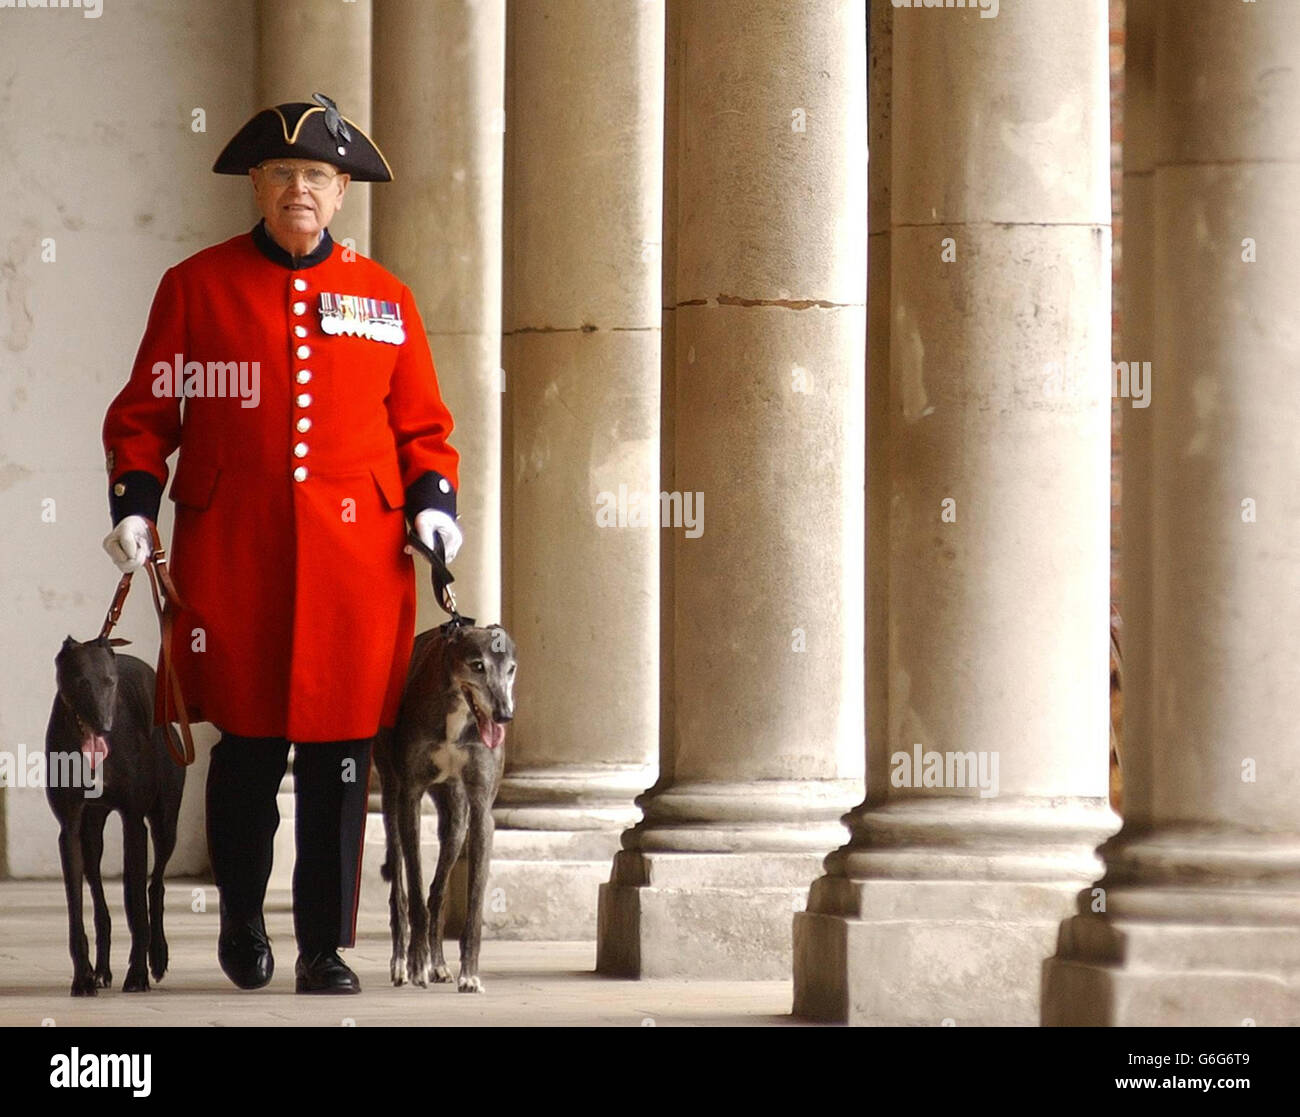 Il pensionato e amante dei cani di Chelsea Alan Gale, 84 anni, fa una passeggiata con due levrieri in pensione e riospitati, Becca (a sinistra) di cinque anni e Liam, 11 anni, per celebrare il ritorno del 25.000esimo levriero (Becca) da parte del pensionato Greyhound Trust, al Royal Hospital Chelsea, Londra. Foto Stock